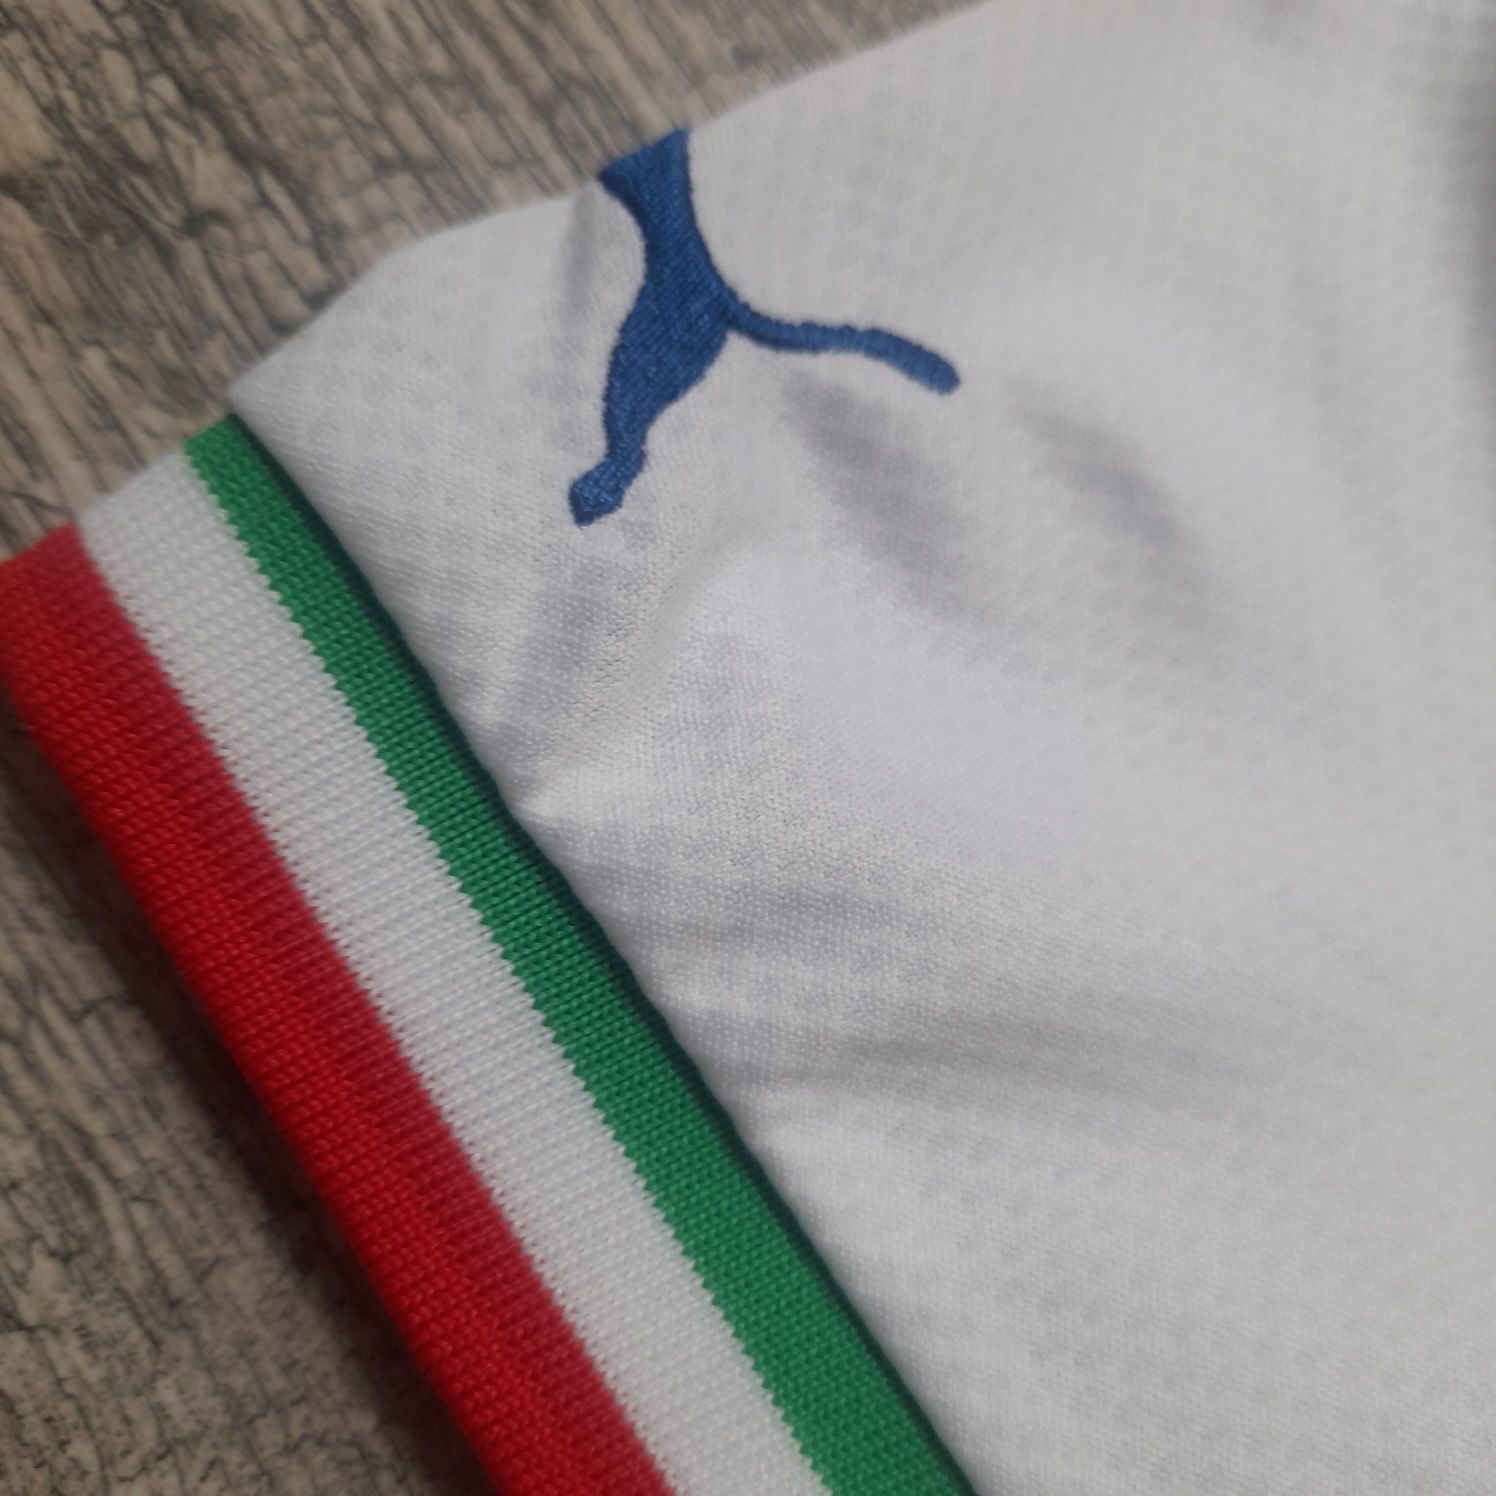 Koszulka Puma biała 128 cm Włochy